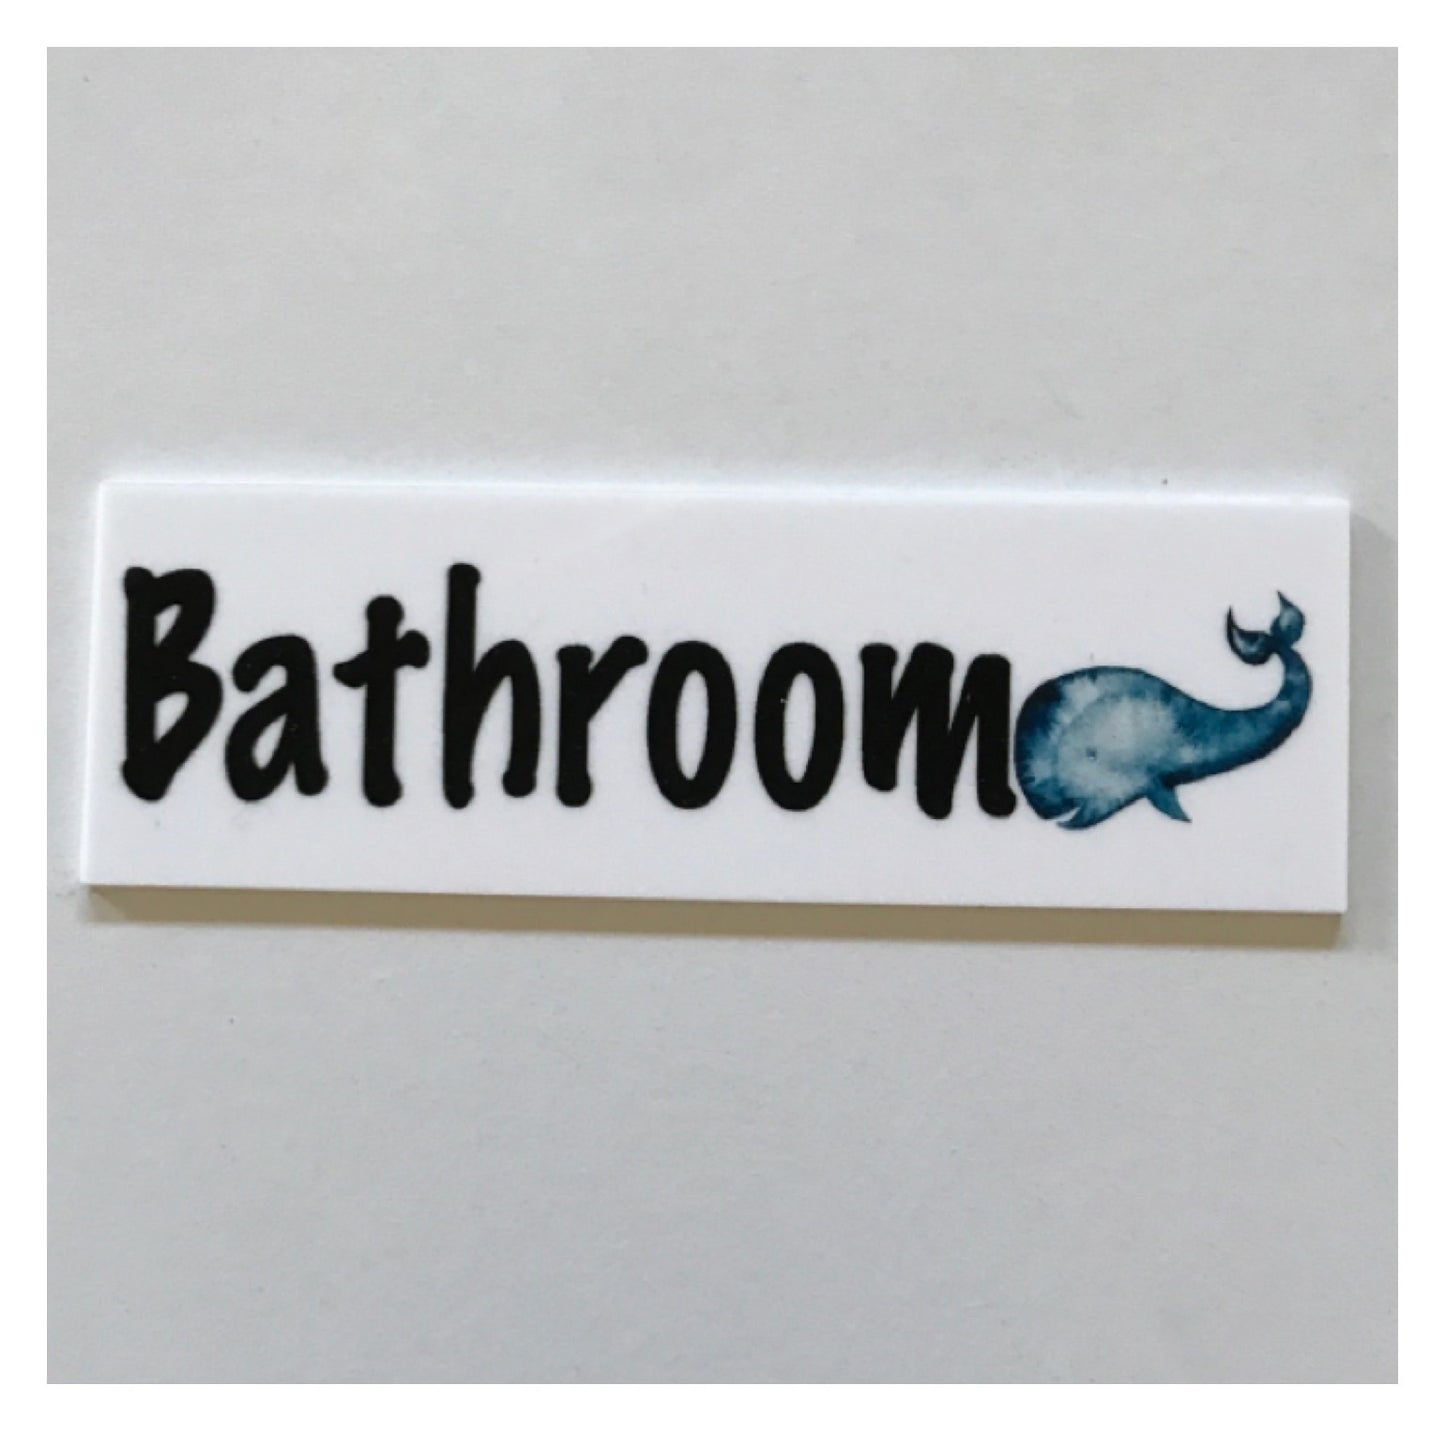 Whale Toilet Laundry Bathroom Door Sign